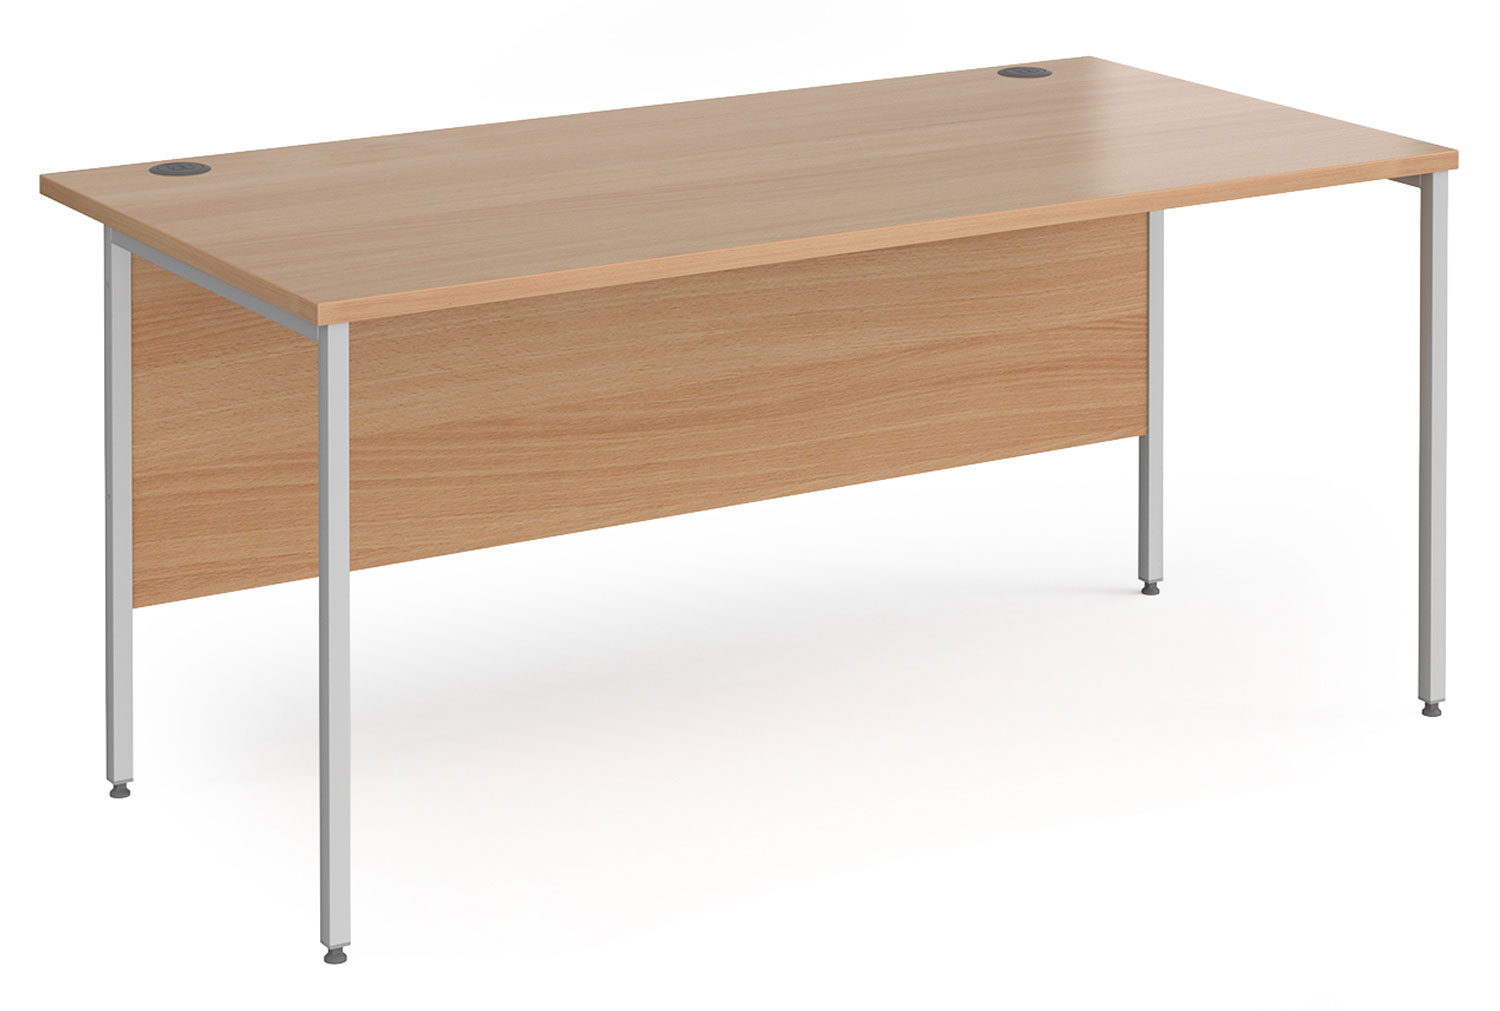 Value Line Classic+ Rectangular H-Leg Office Desk (Silver Leg), 160wx80dx73h (cm), Beech